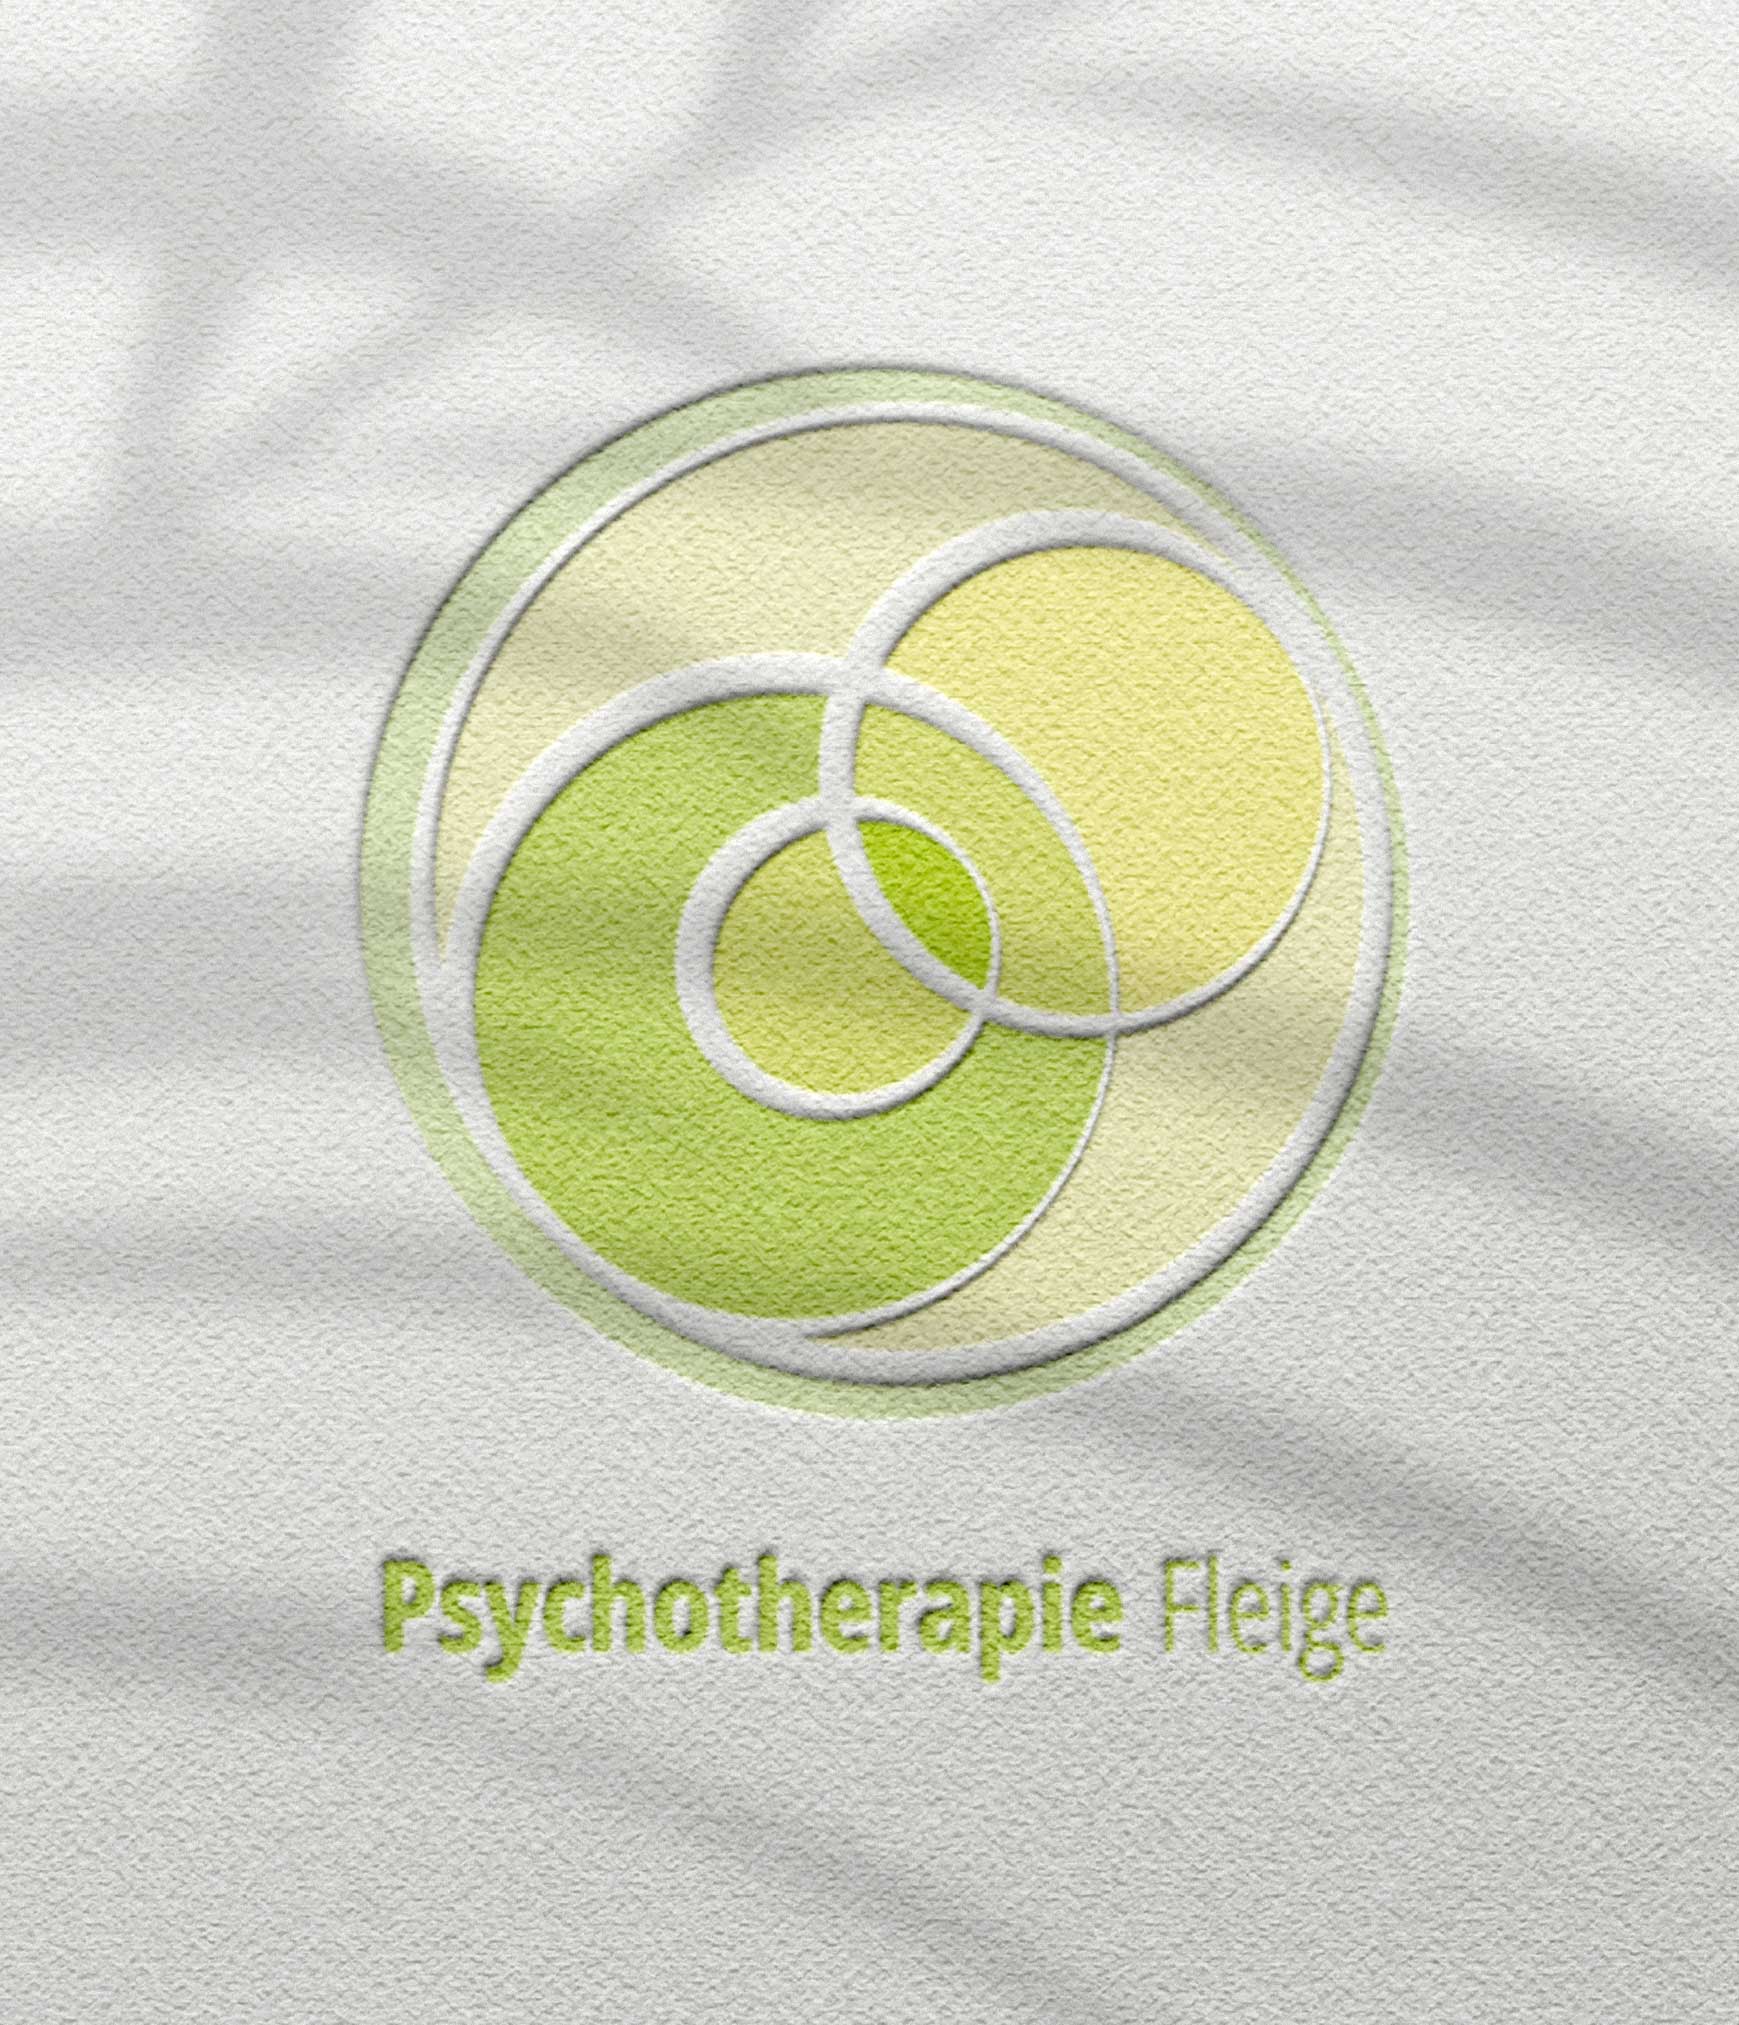 Psychotherapie Fleige